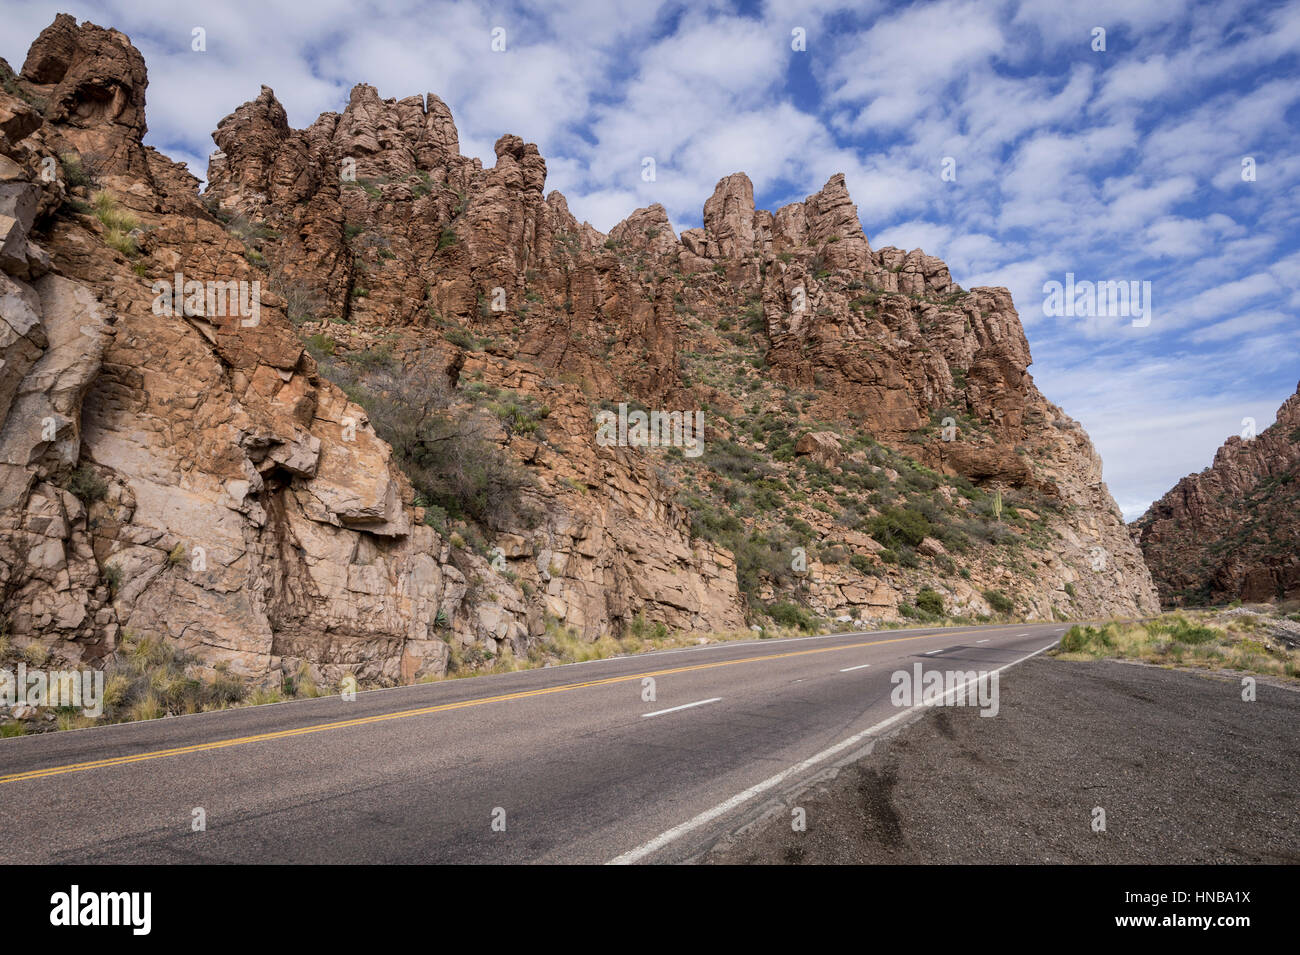 Le formazioni rocciose Tonto National Forest, Arizona, Stati Uniti d'America Foto Stock